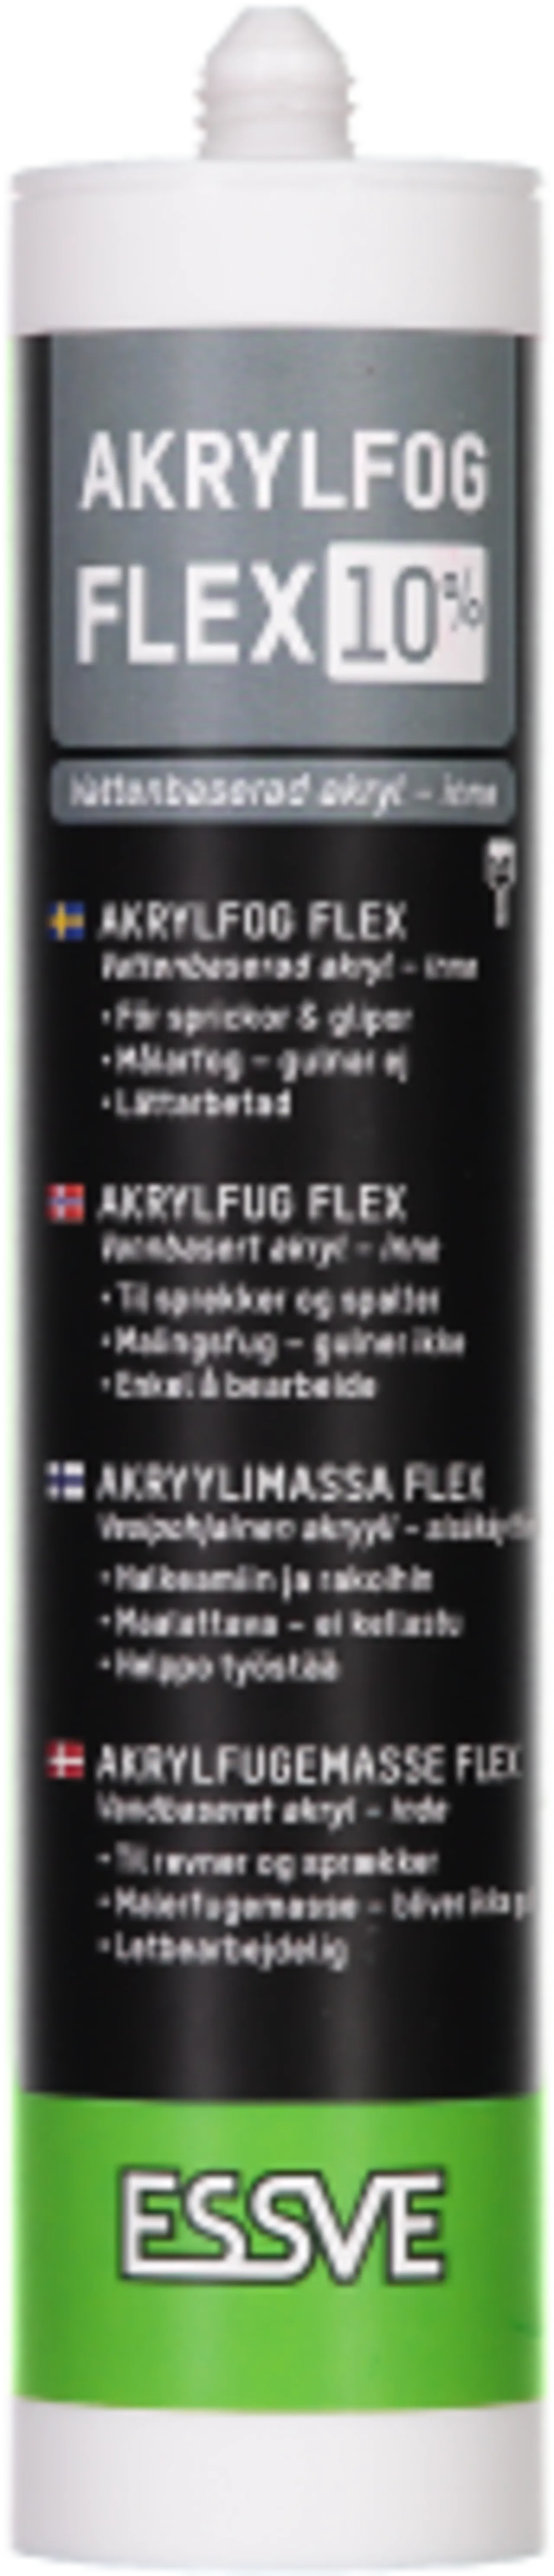 Akryl flex 10 hvit 300mlncs 0603-g80y